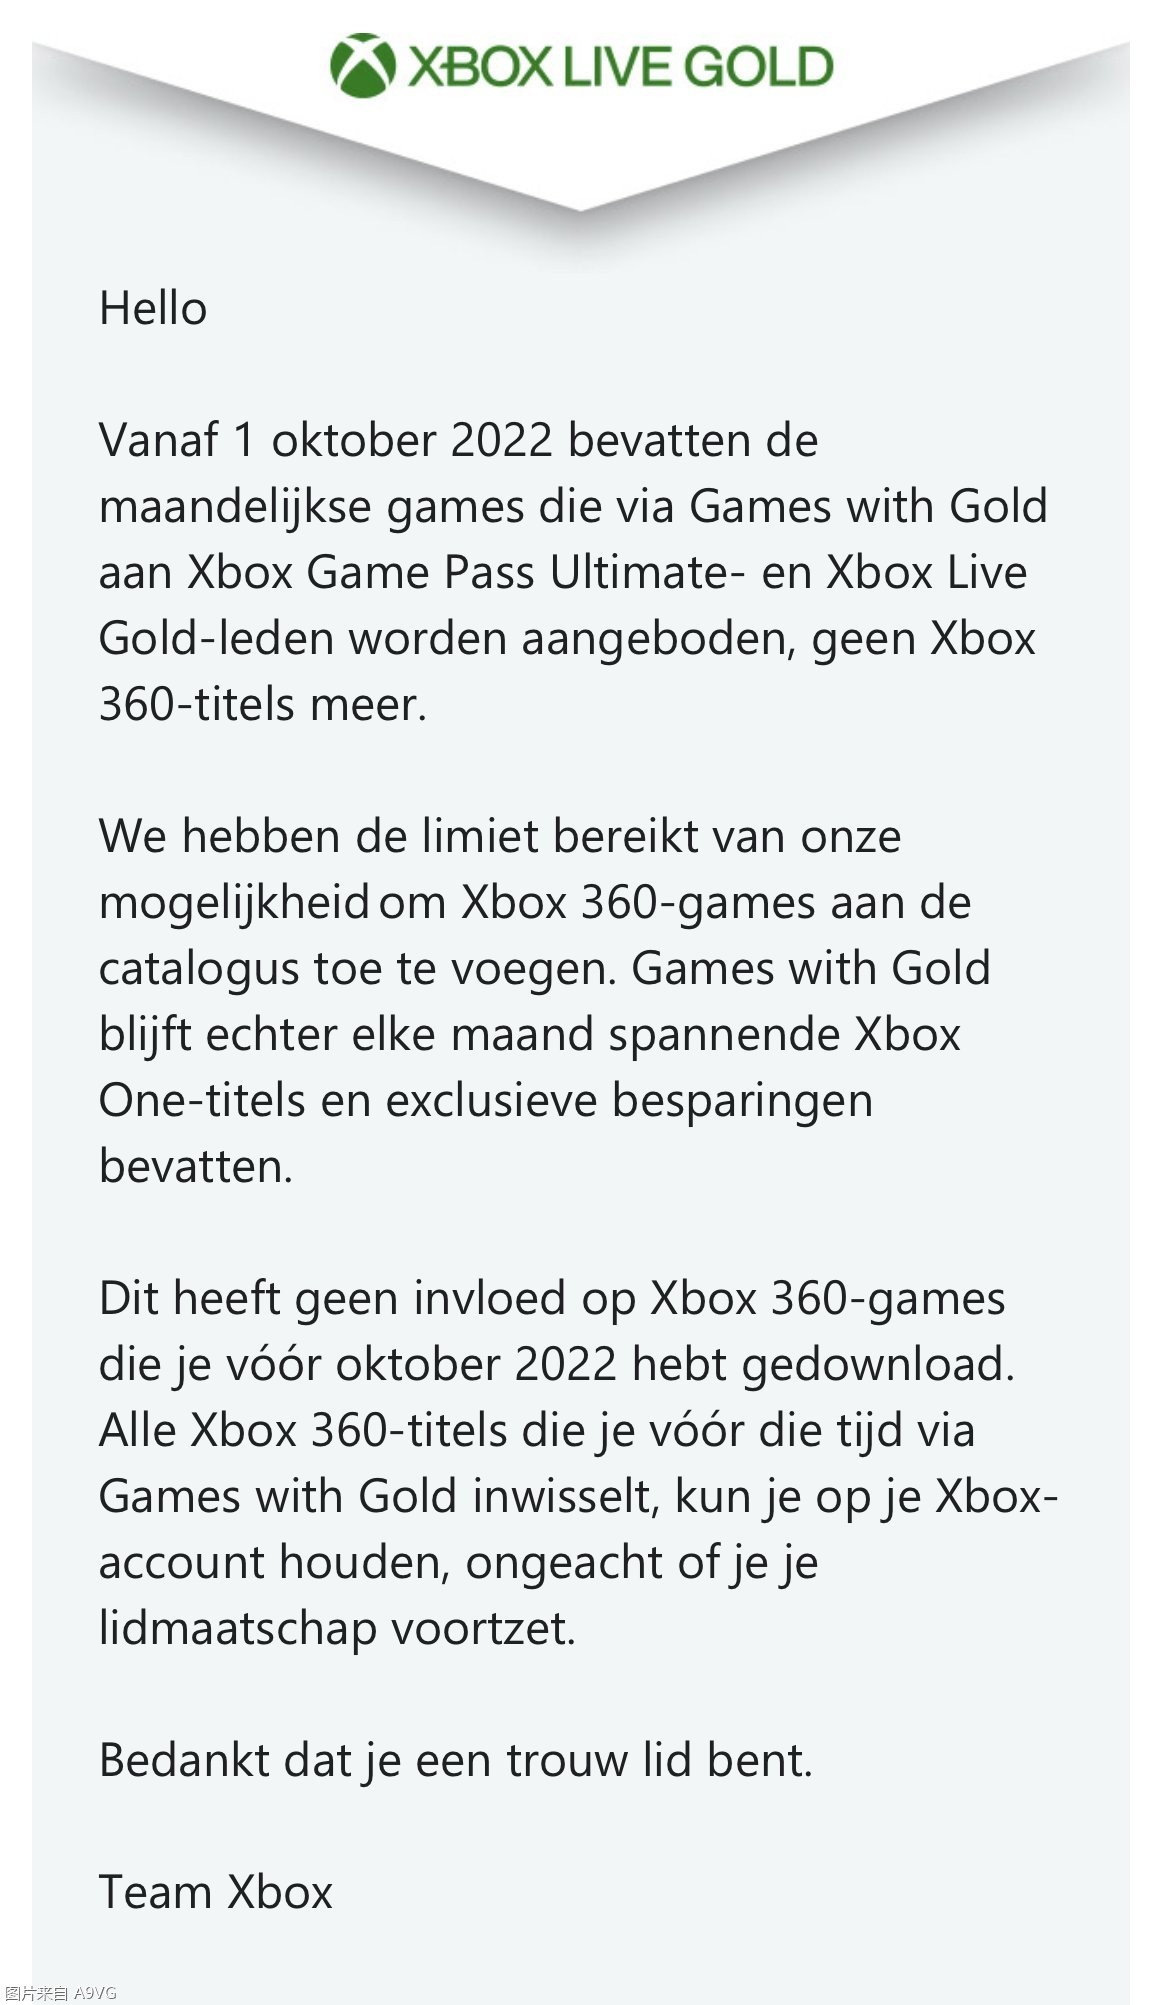 Xbox金會員從10月起不再送X360遊戲 用戶郵件透露消息